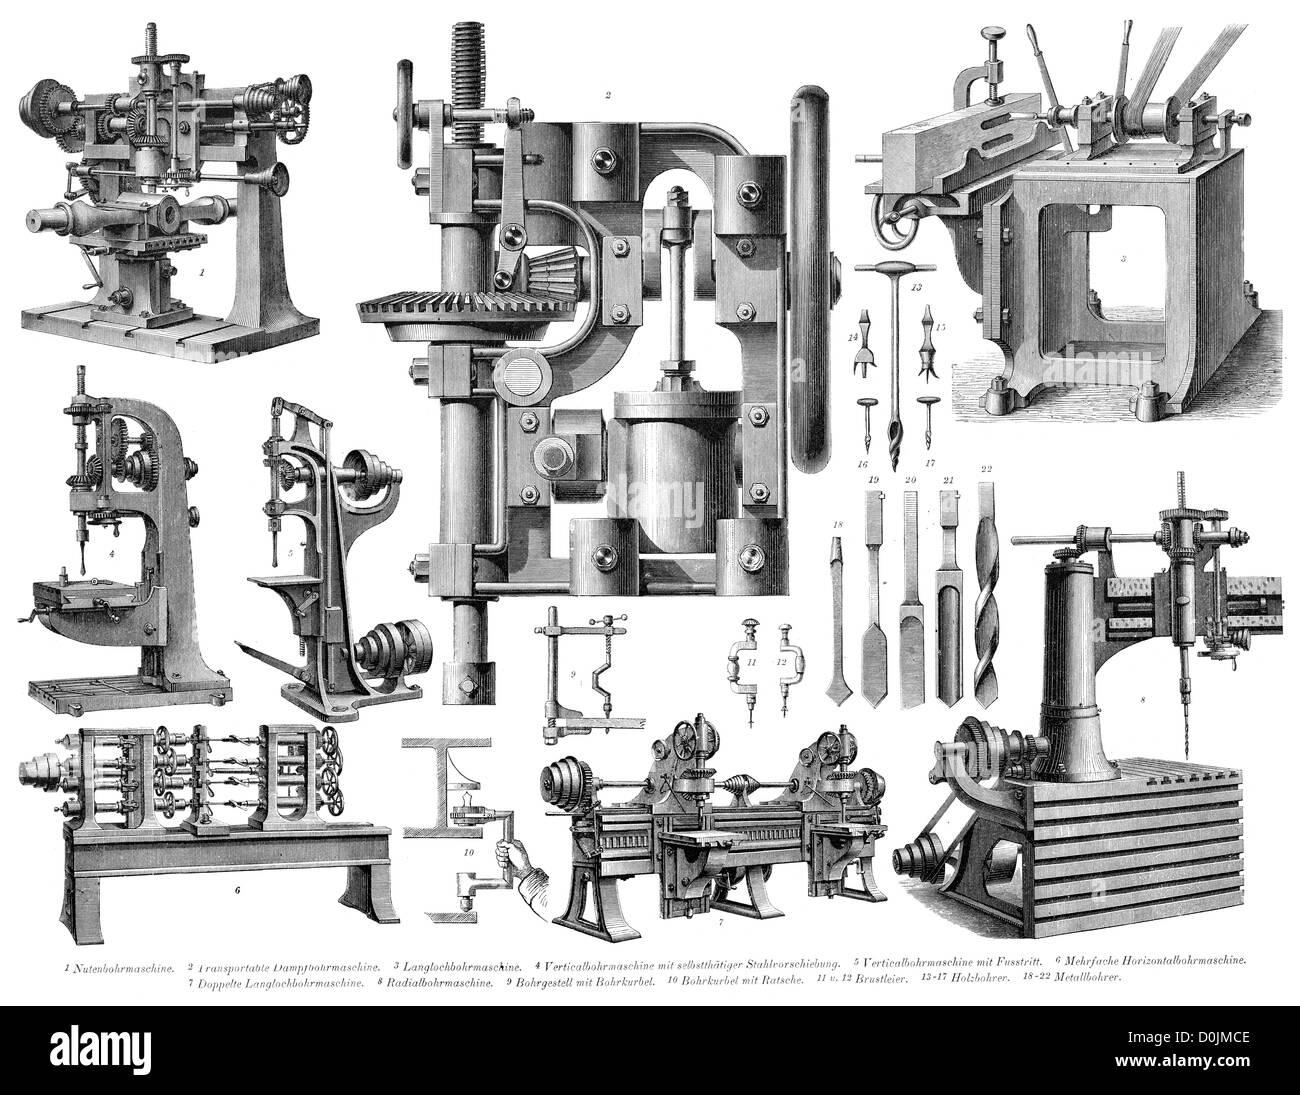 Colección de máquinas desde la revolución industrial, incluyendo un vapor máquinas de perforación Foto de stock